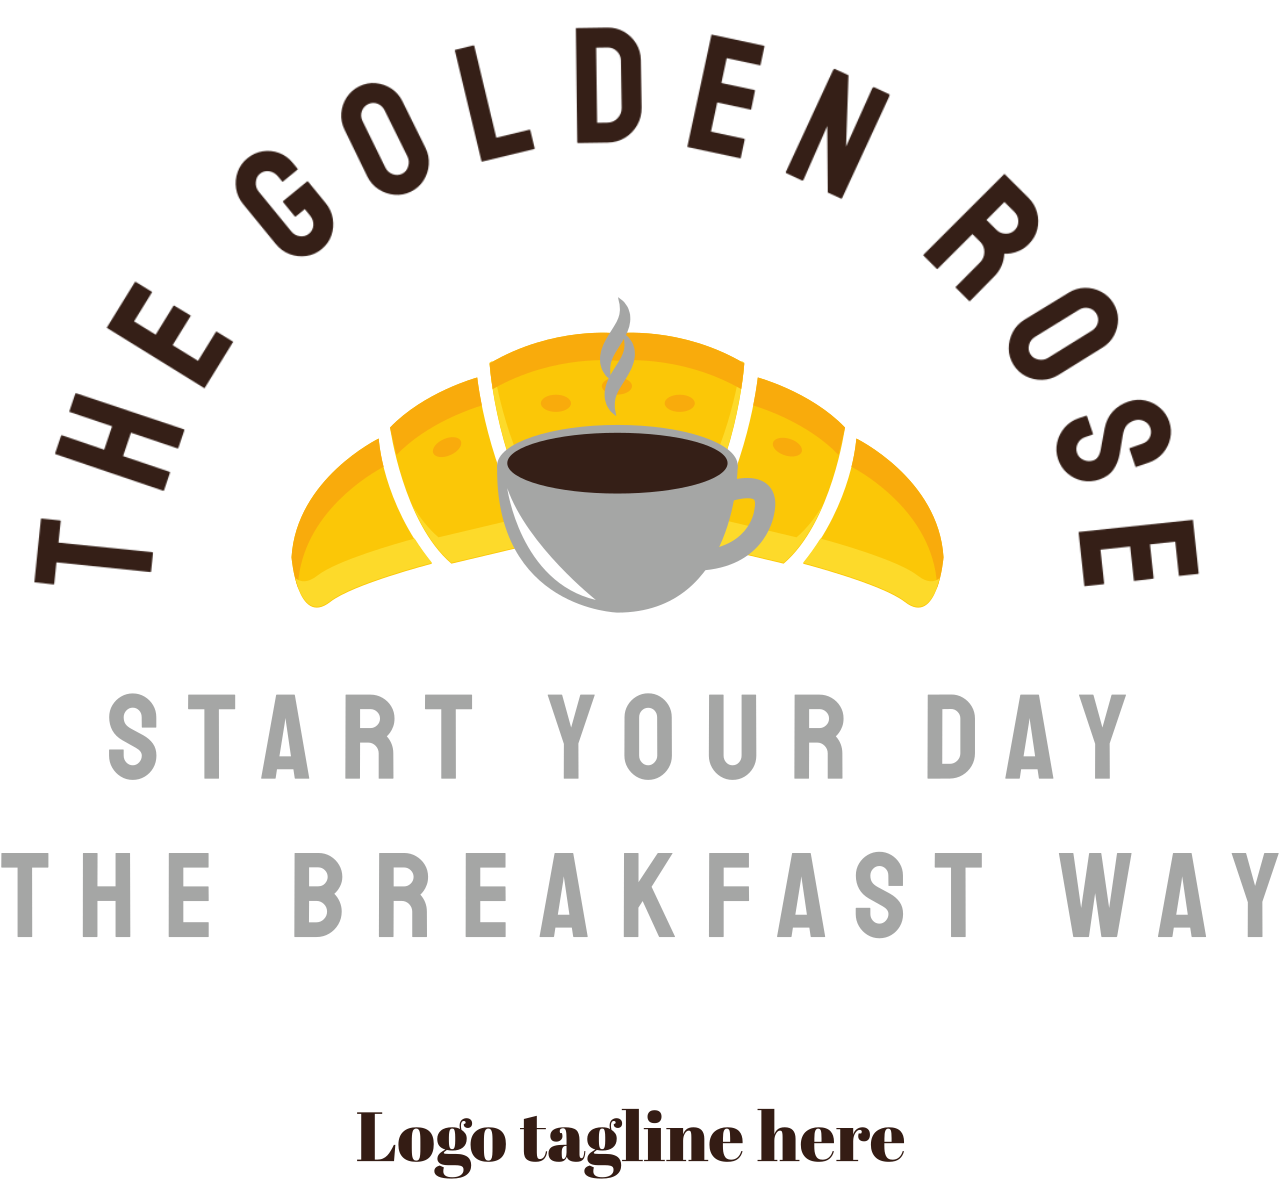 The golden rose's logo